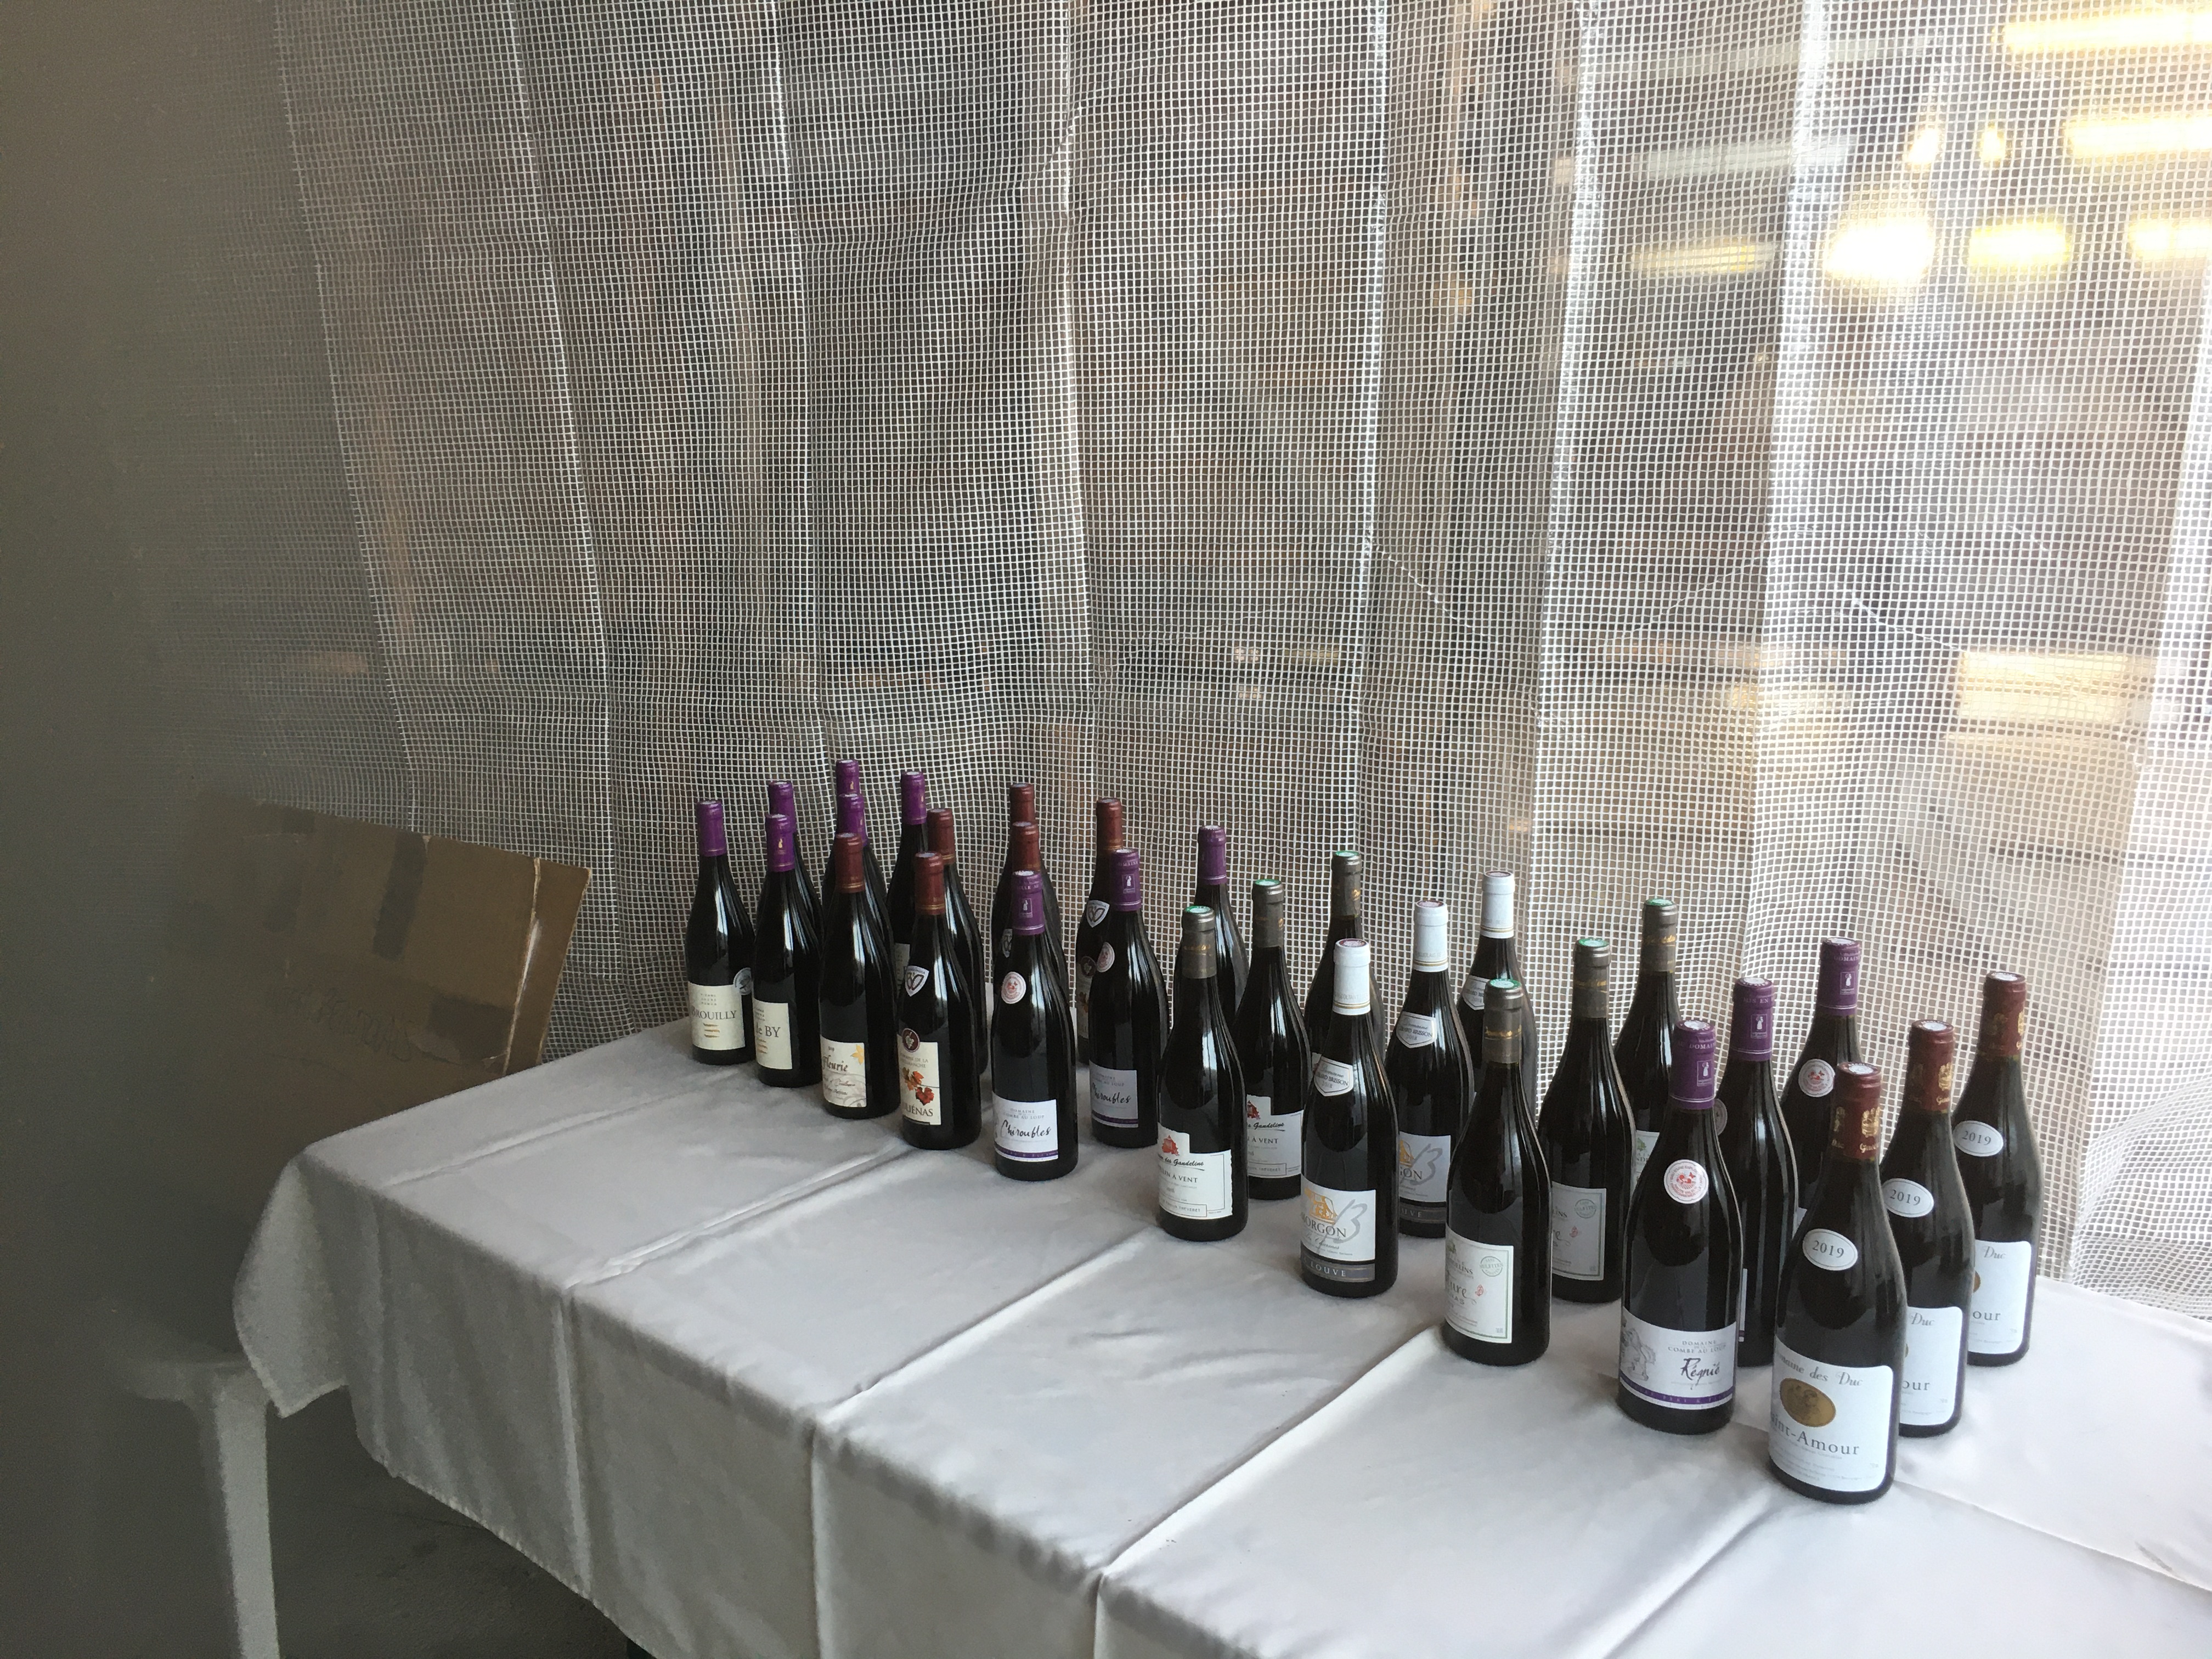 La soirée des dix crus du beaujolais – Un succès pour le vin, un triomphe pour le chef !